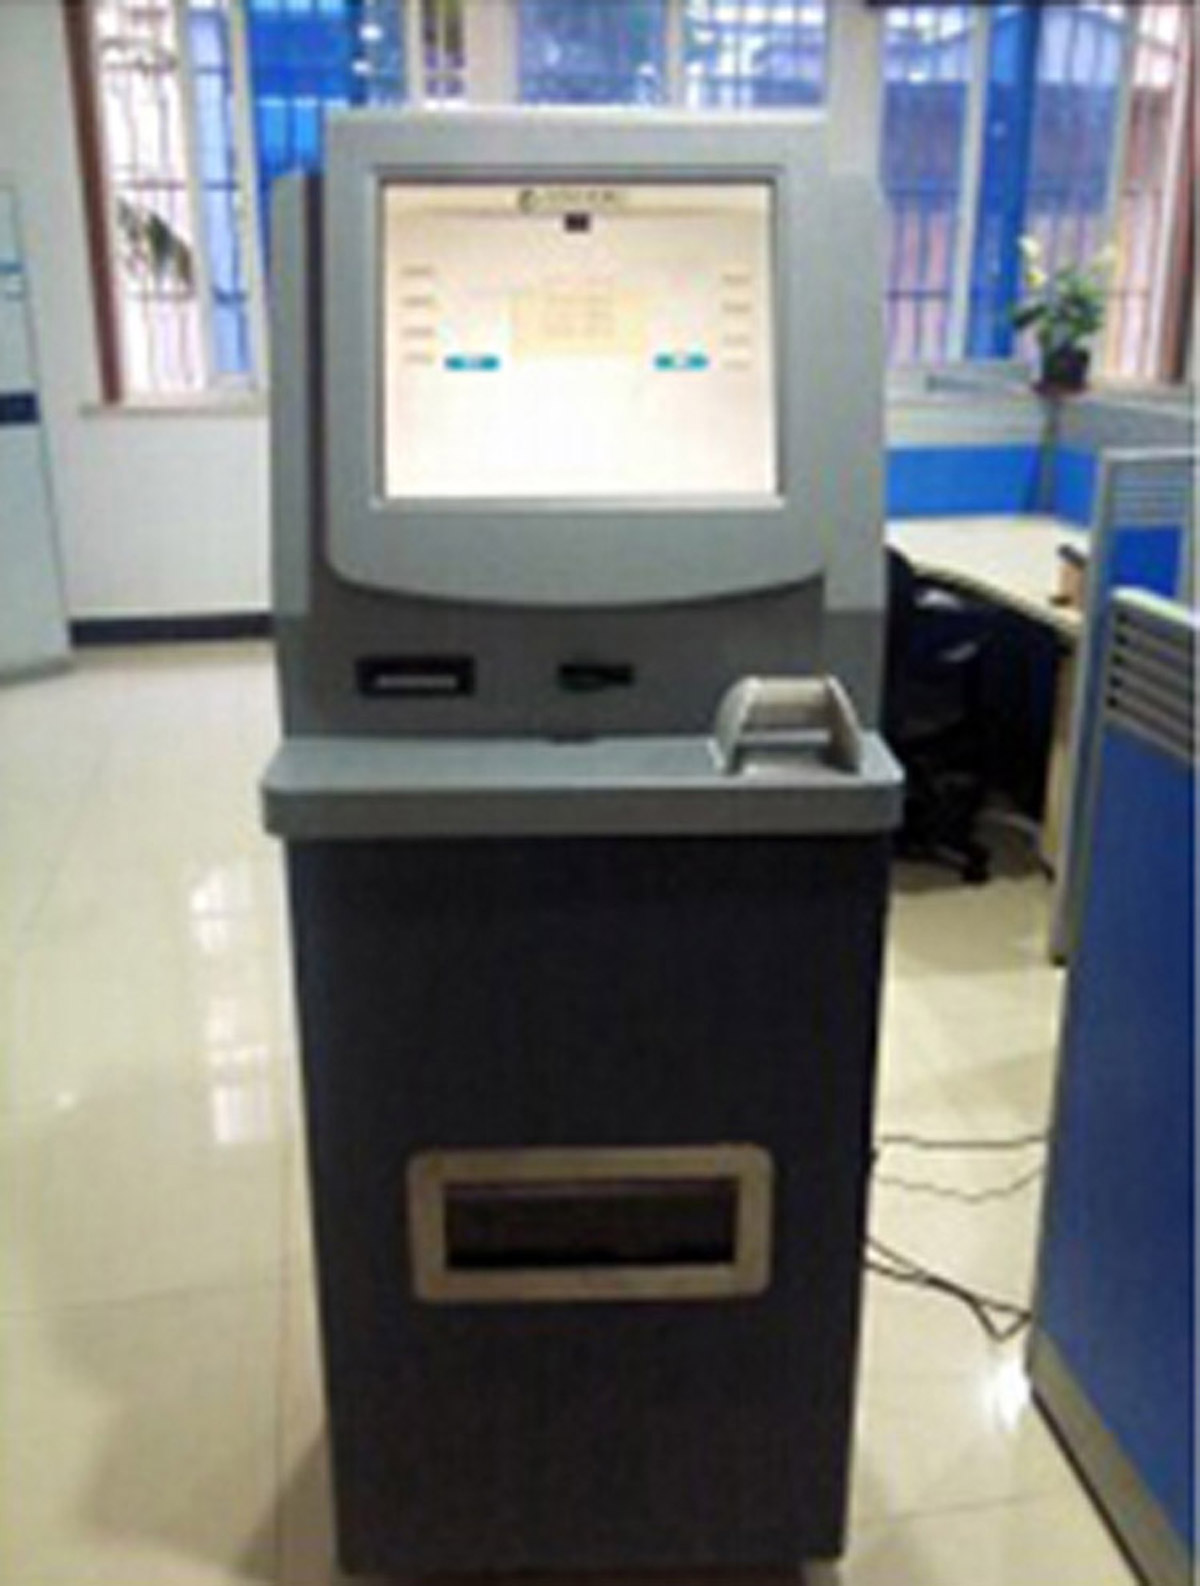 鄢陵模拟ATM提款操作